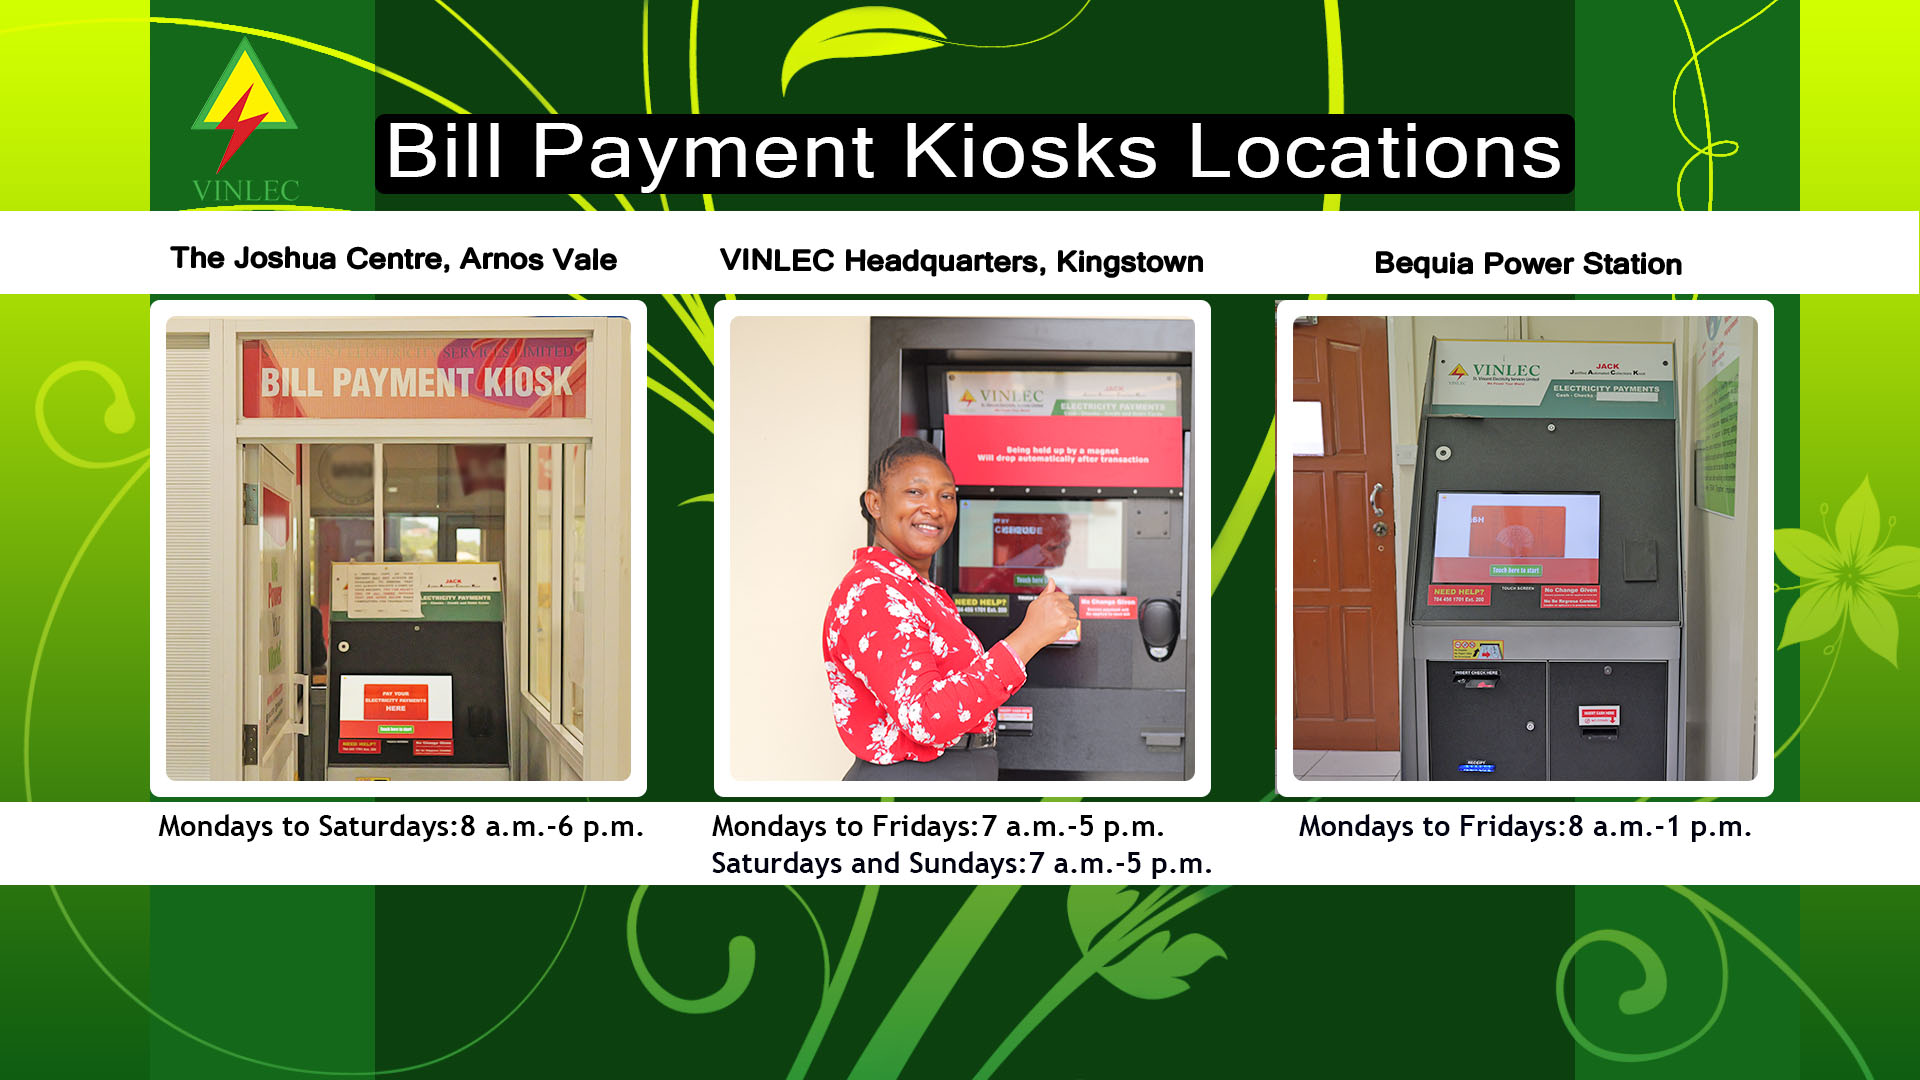 Bill Payment Kiosks